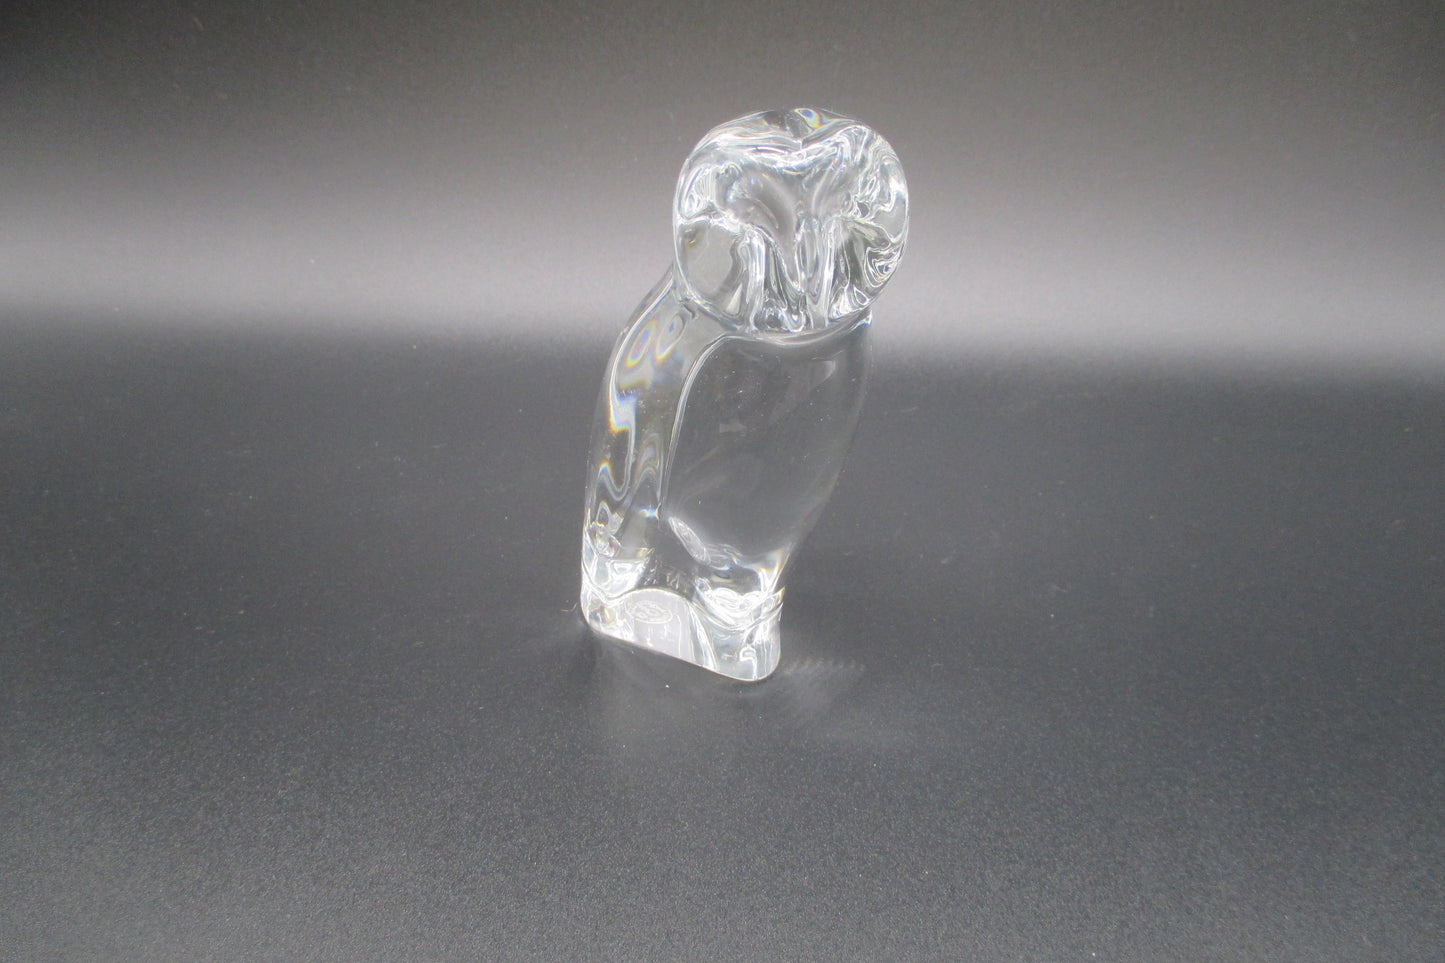 Baccarat Lead Crystal Owl Figurine